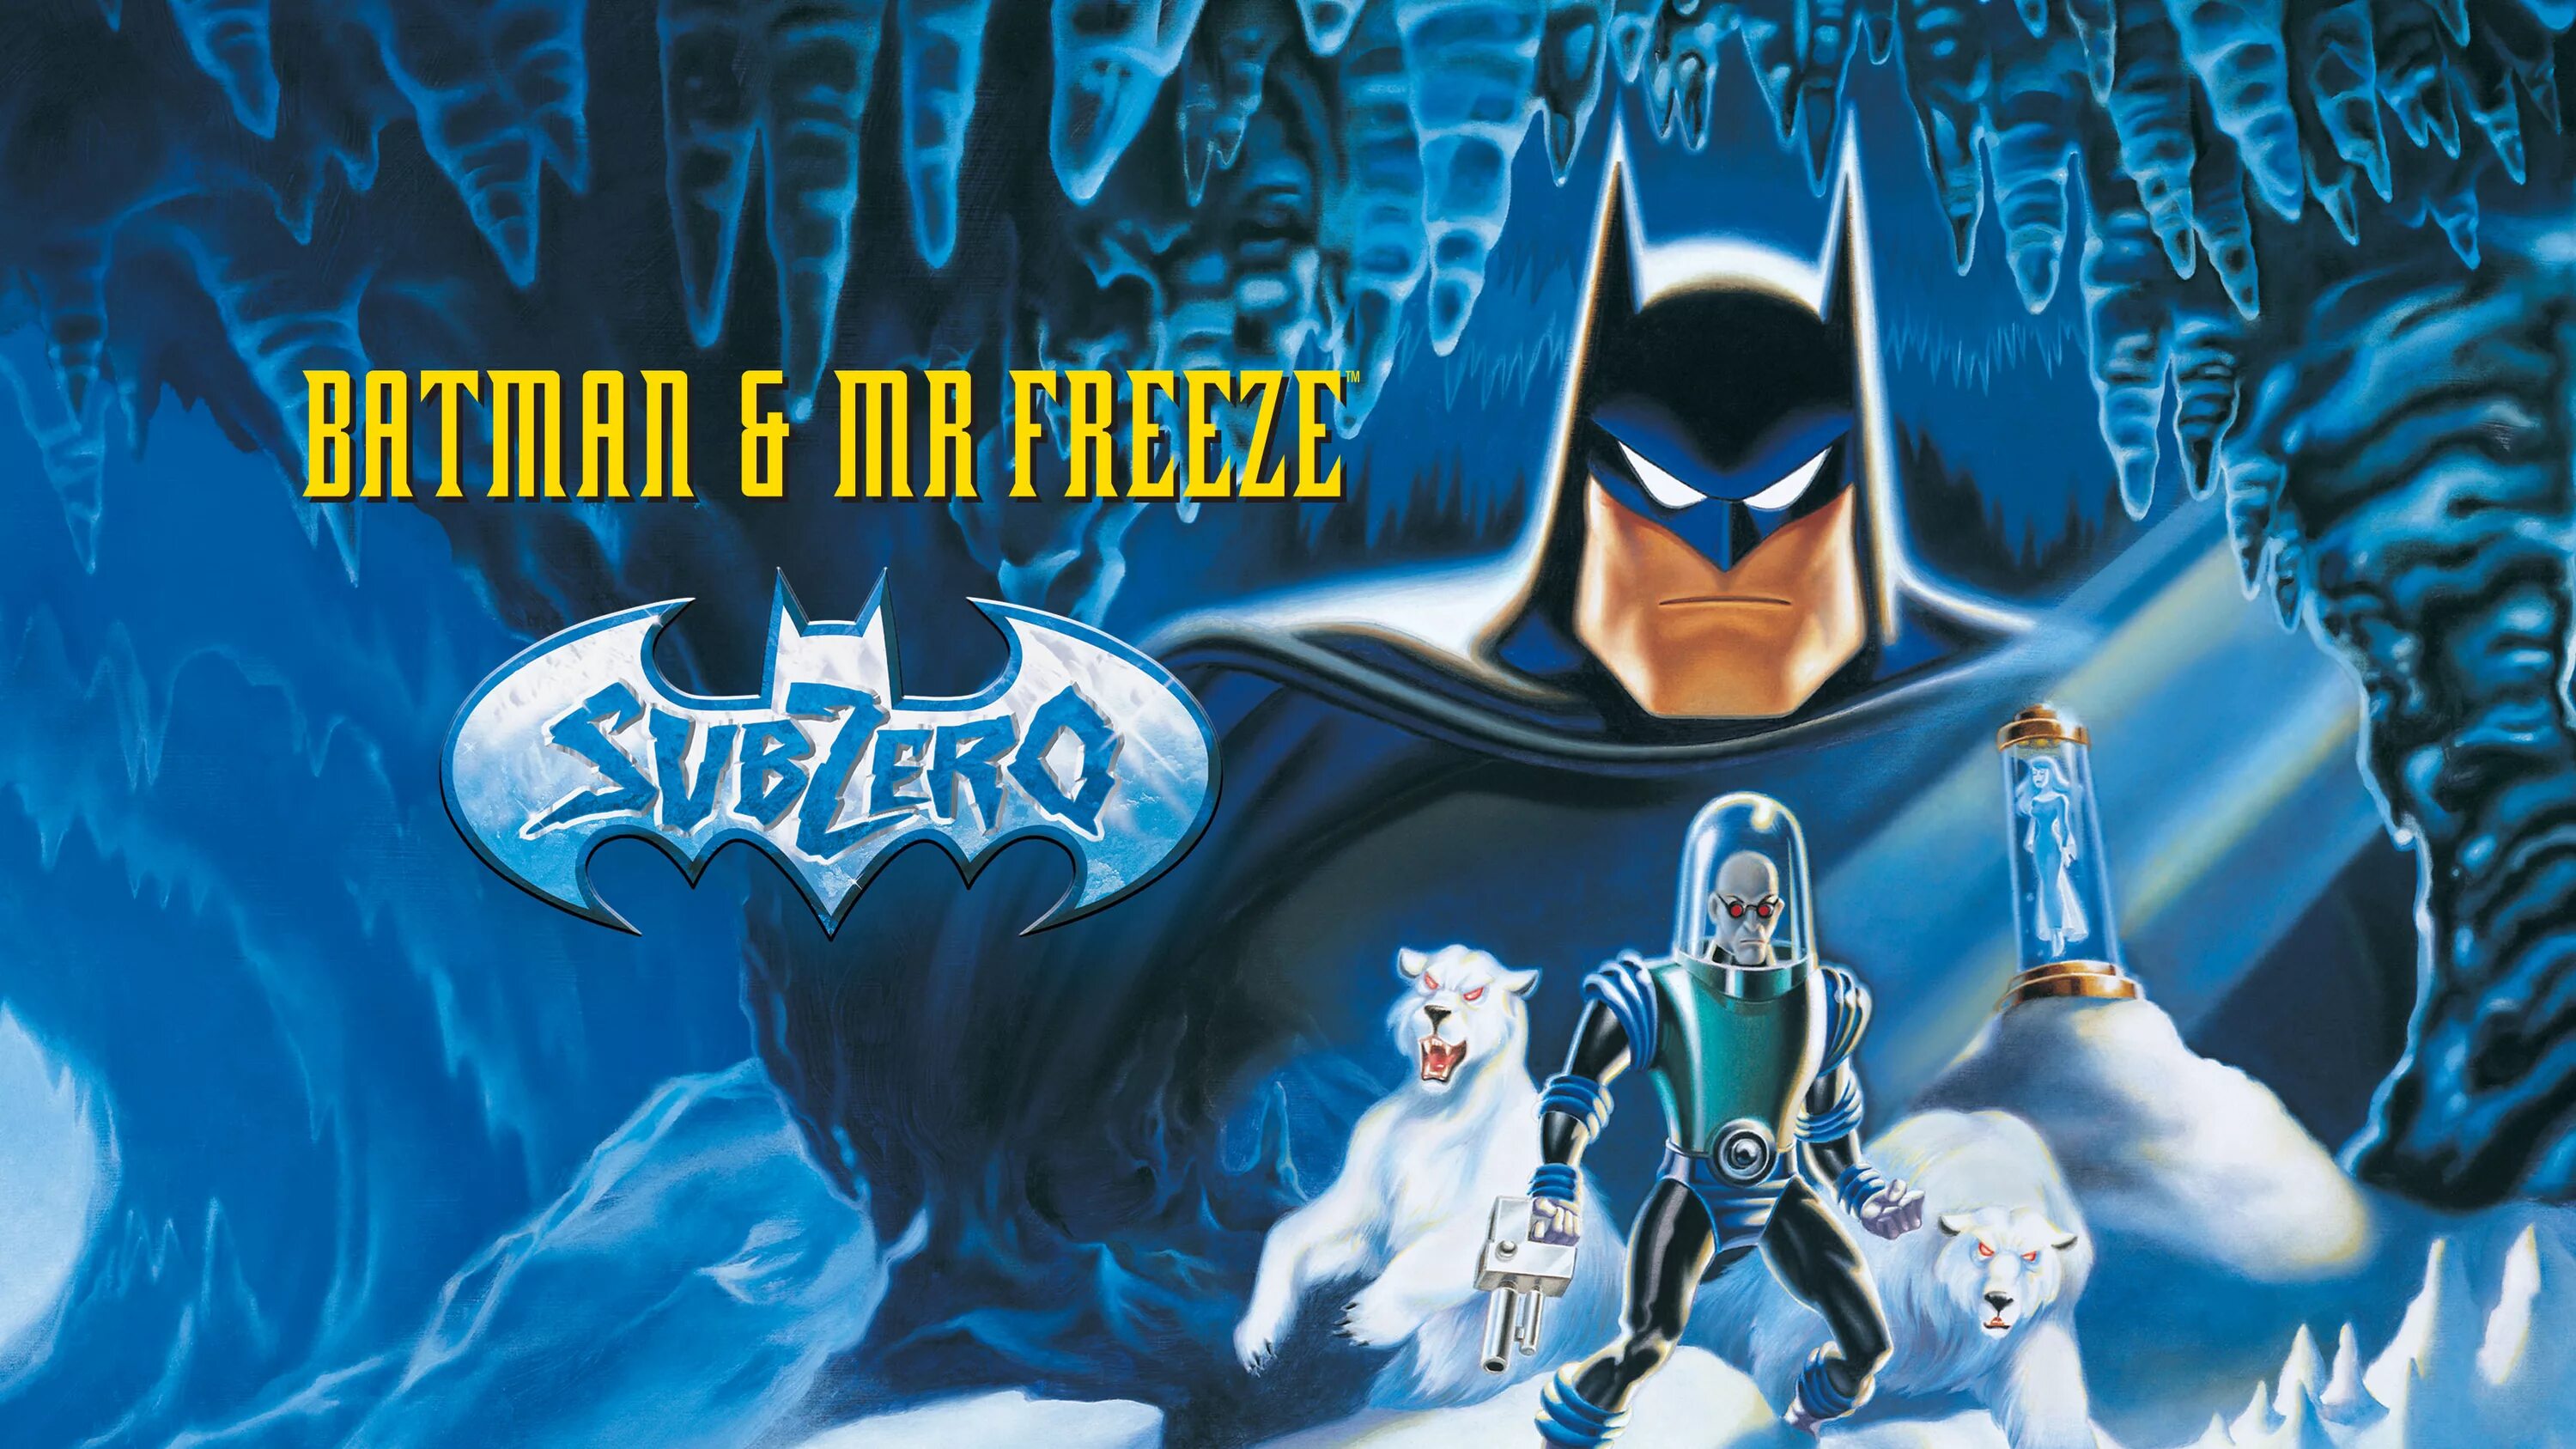 M freeze. Бэтмен 1992 Мистер фриз. Мистер фриз Бэтмен. Batman and Mr Freeze Subzero.